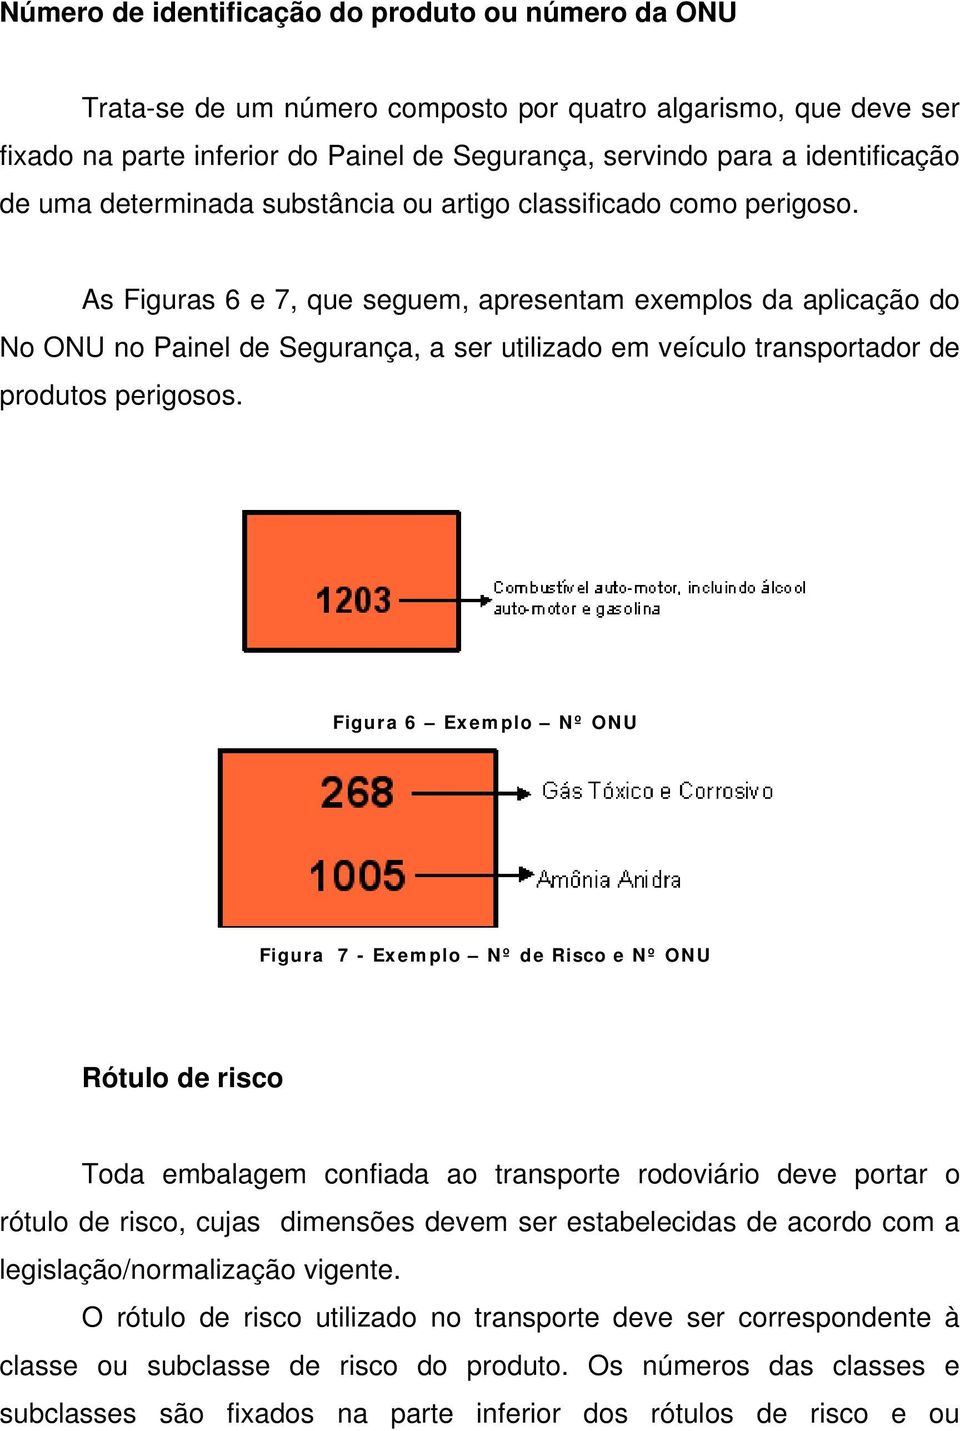 As Figuras 6 e 7, que seguem, apresentam exemplos da aplicação do No ONU no Painel de Segurança, a ser utilizado em veículo transportador de produtos perigosos.